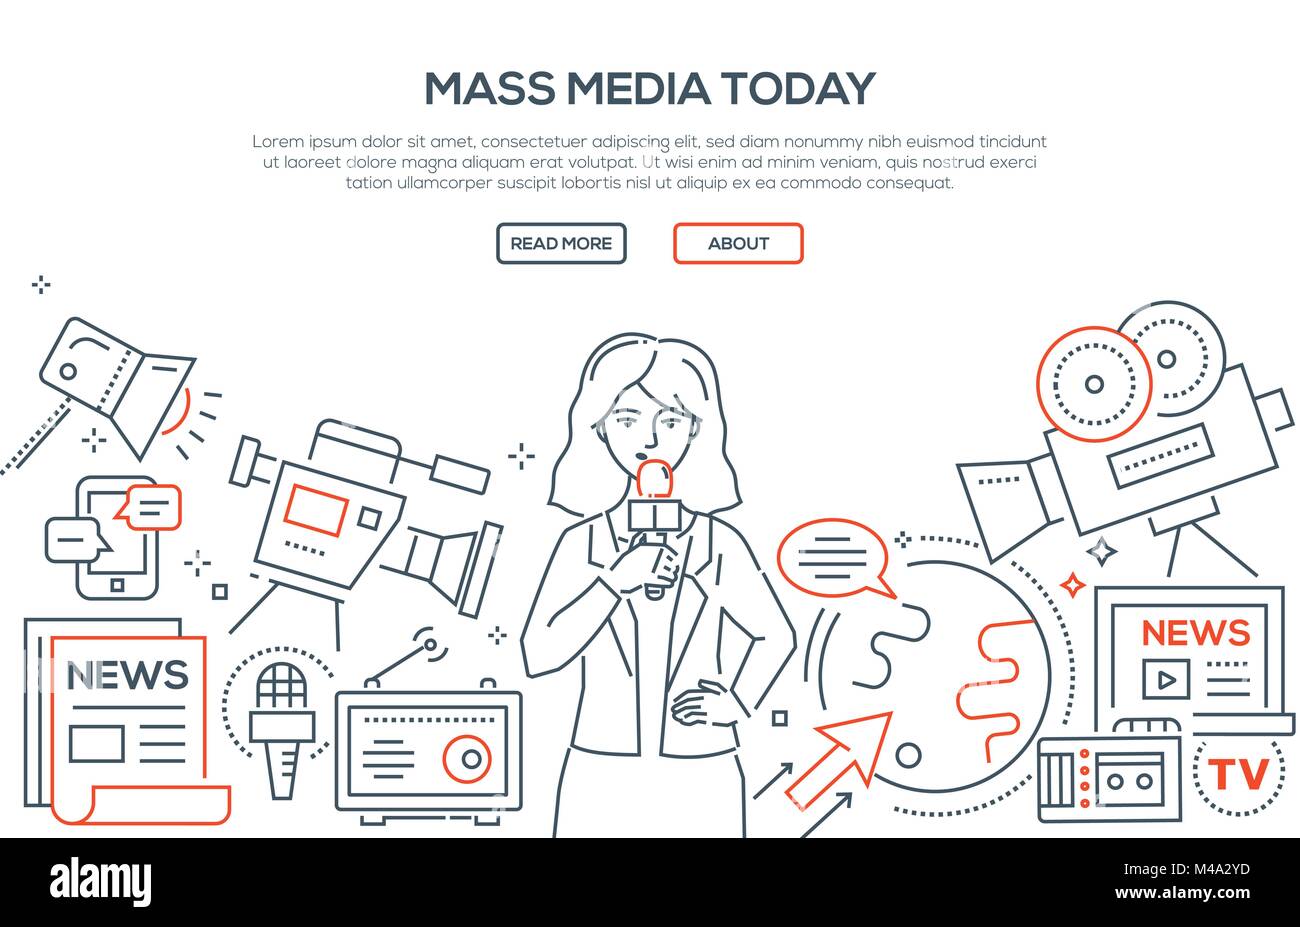 Mass Media: Society and Culture. Evolution of Media | by taratalk | Medium